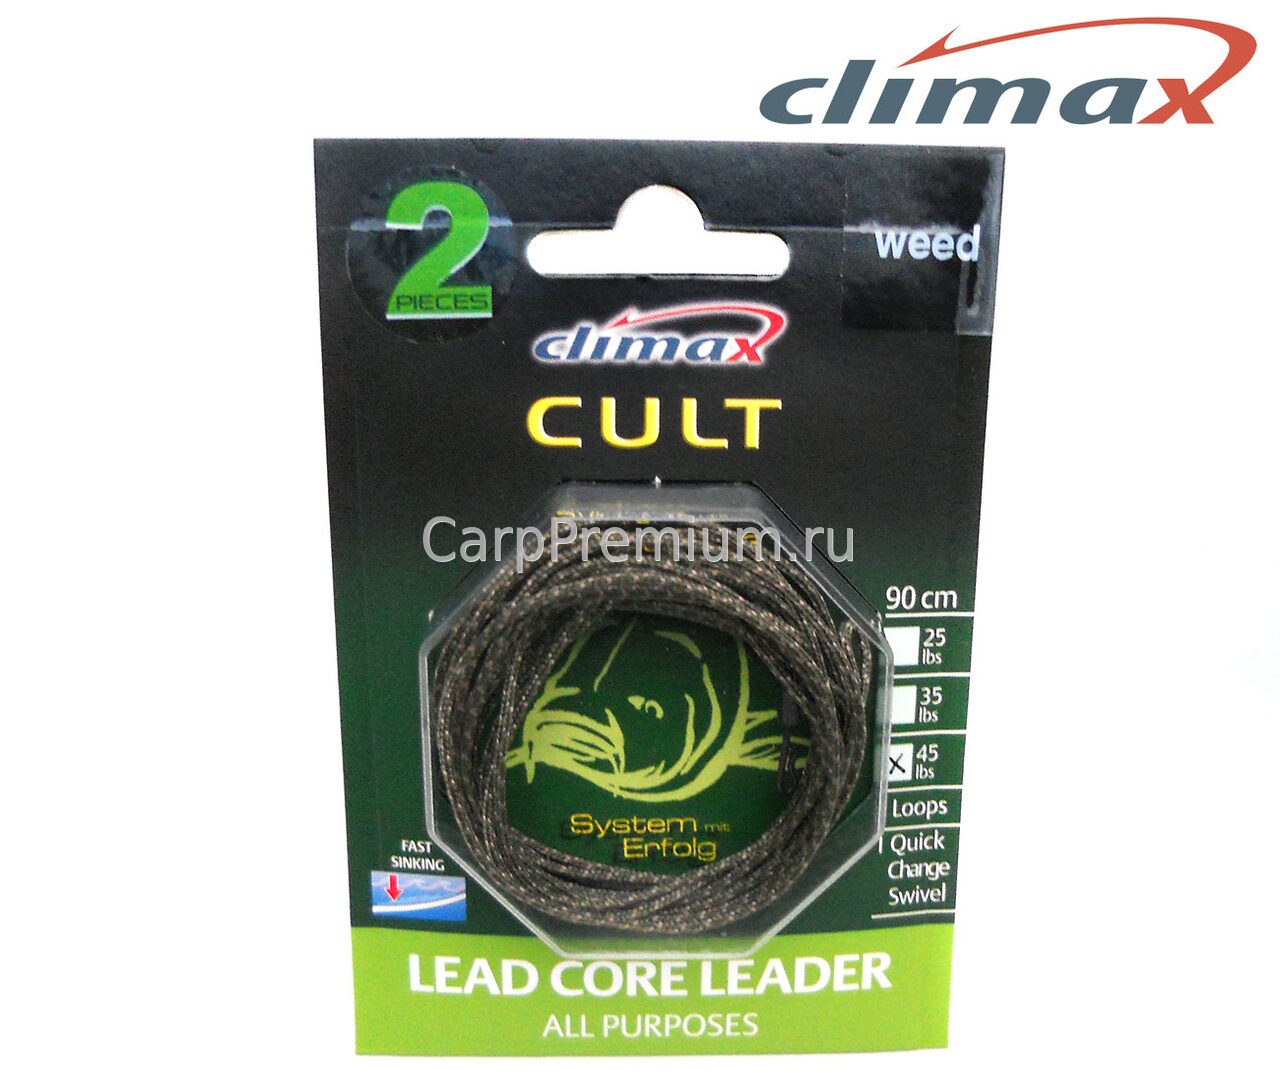 Готовые лидкоры со свинцовым стержнем и оснащенные быстросъемами Зеленые Сlimax (Клаймакс) - Lead Core Leader All Purpose Weed 20 кг / 45 lb, 90 см, 2 шт